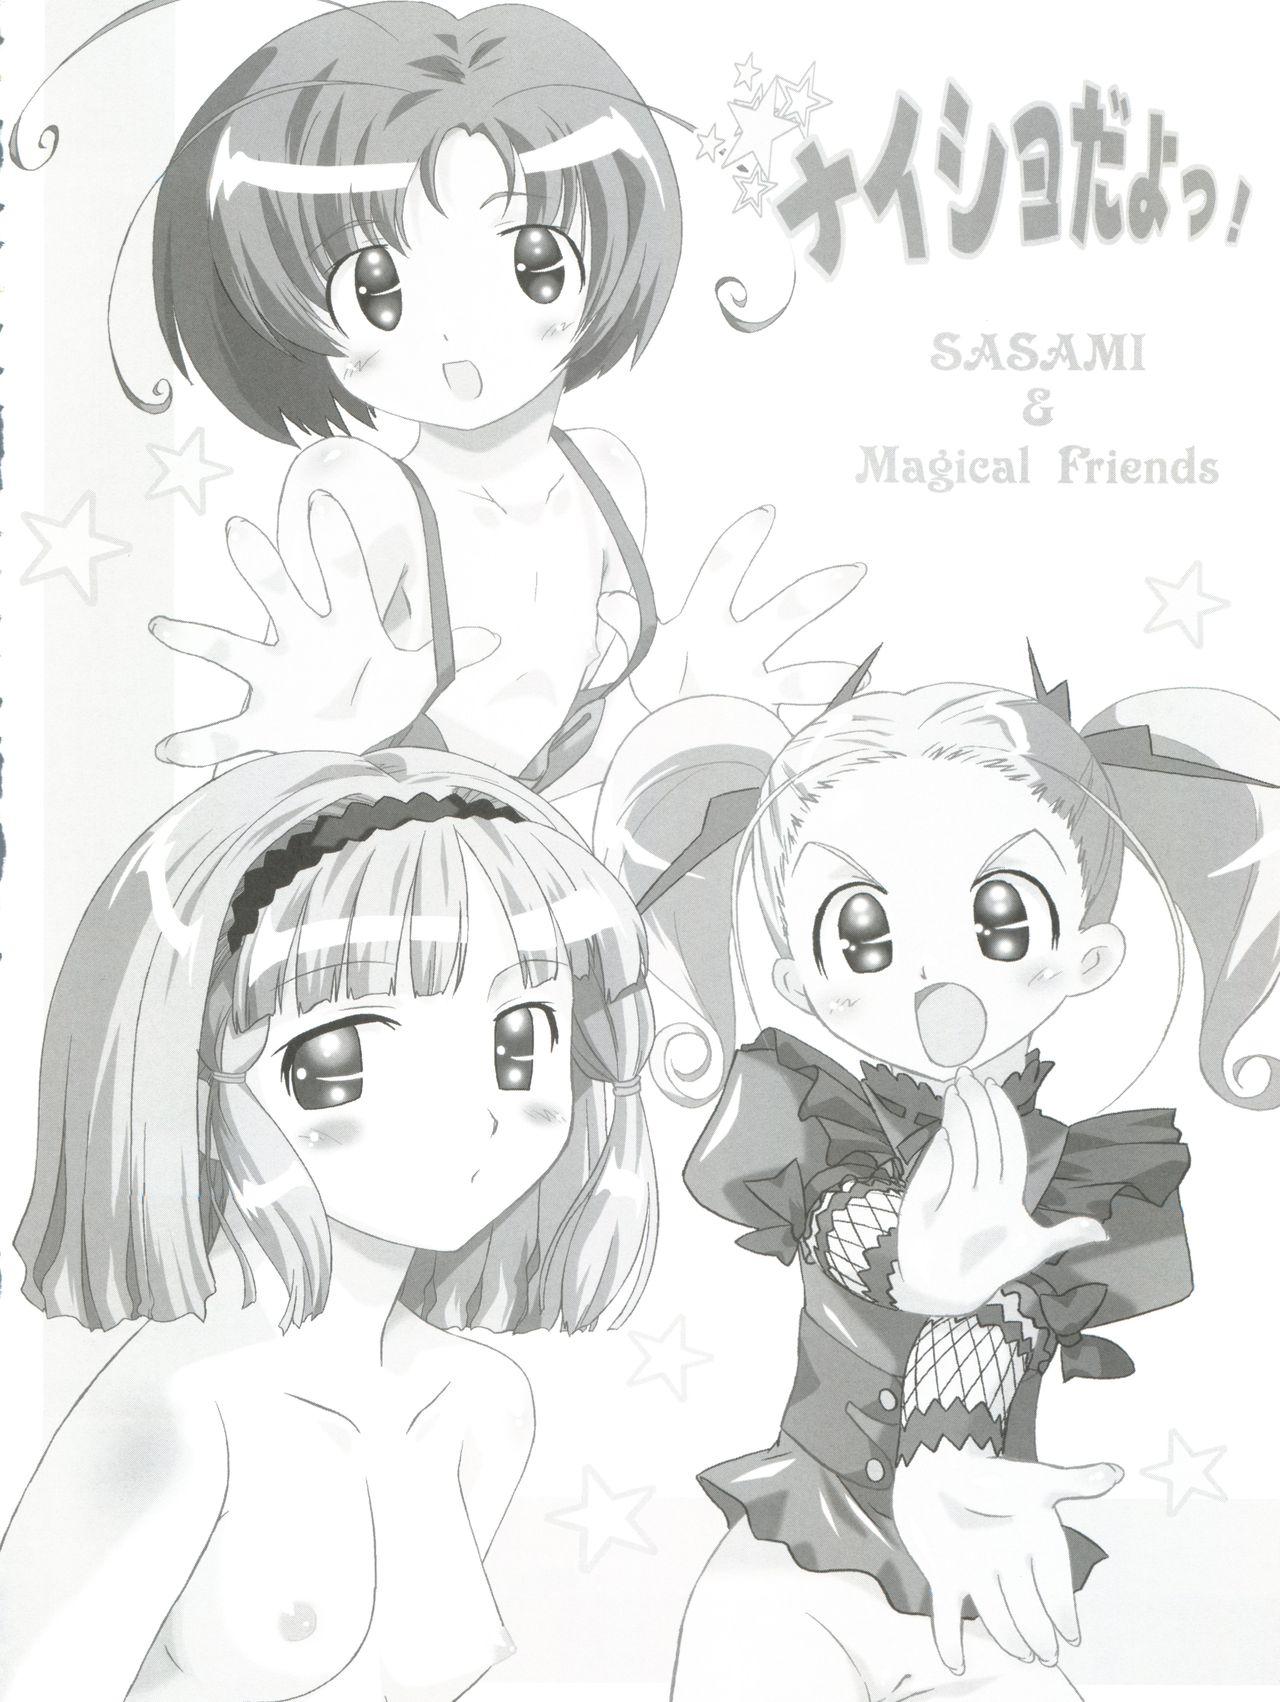 Leite Naisho da yo! Mahou no Club Katsudou - Sasami magical girls club Mas - Page 3